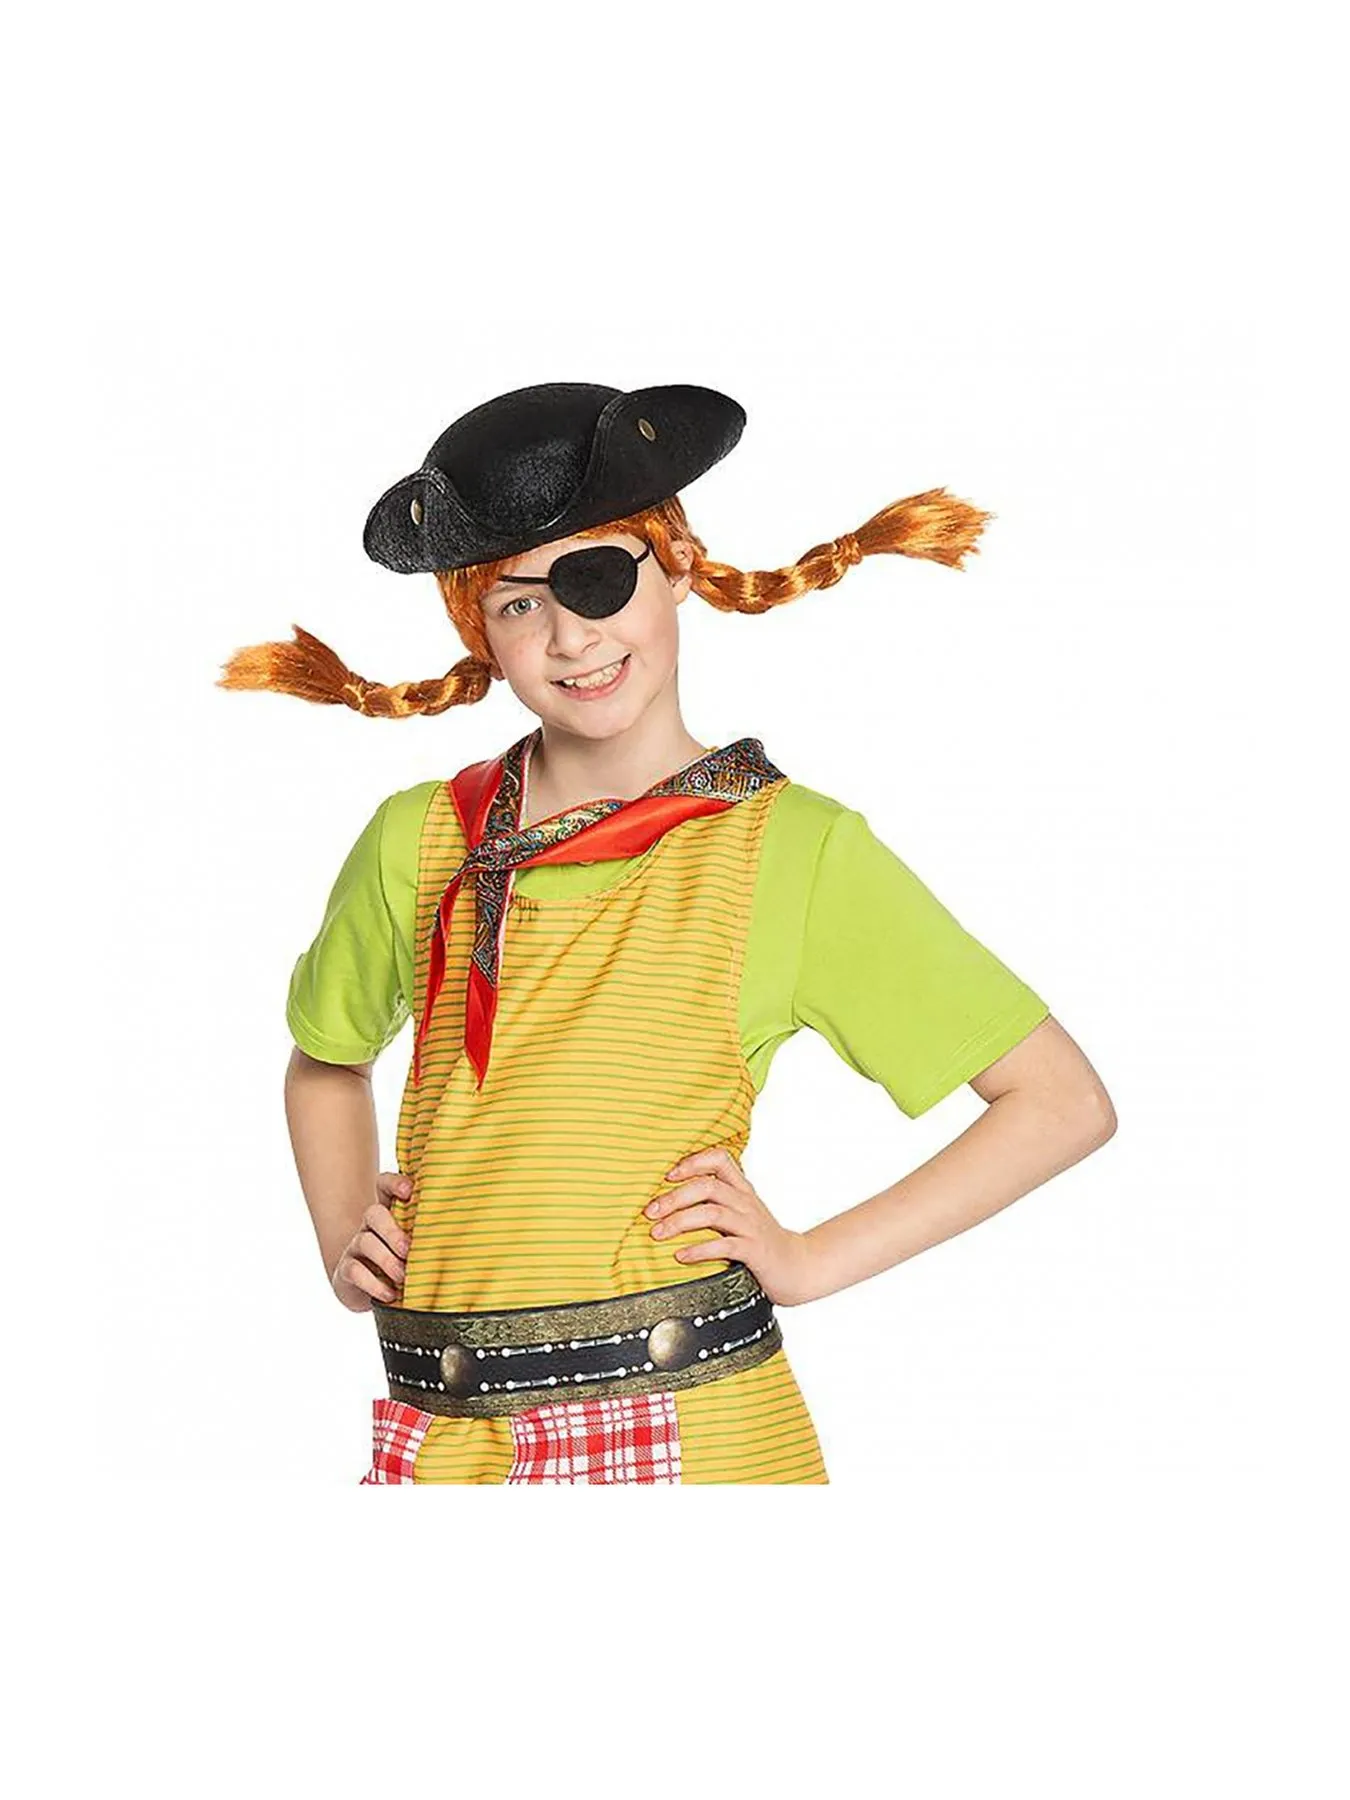 Piraten-Set Pippi Langstrumpf für Kinder